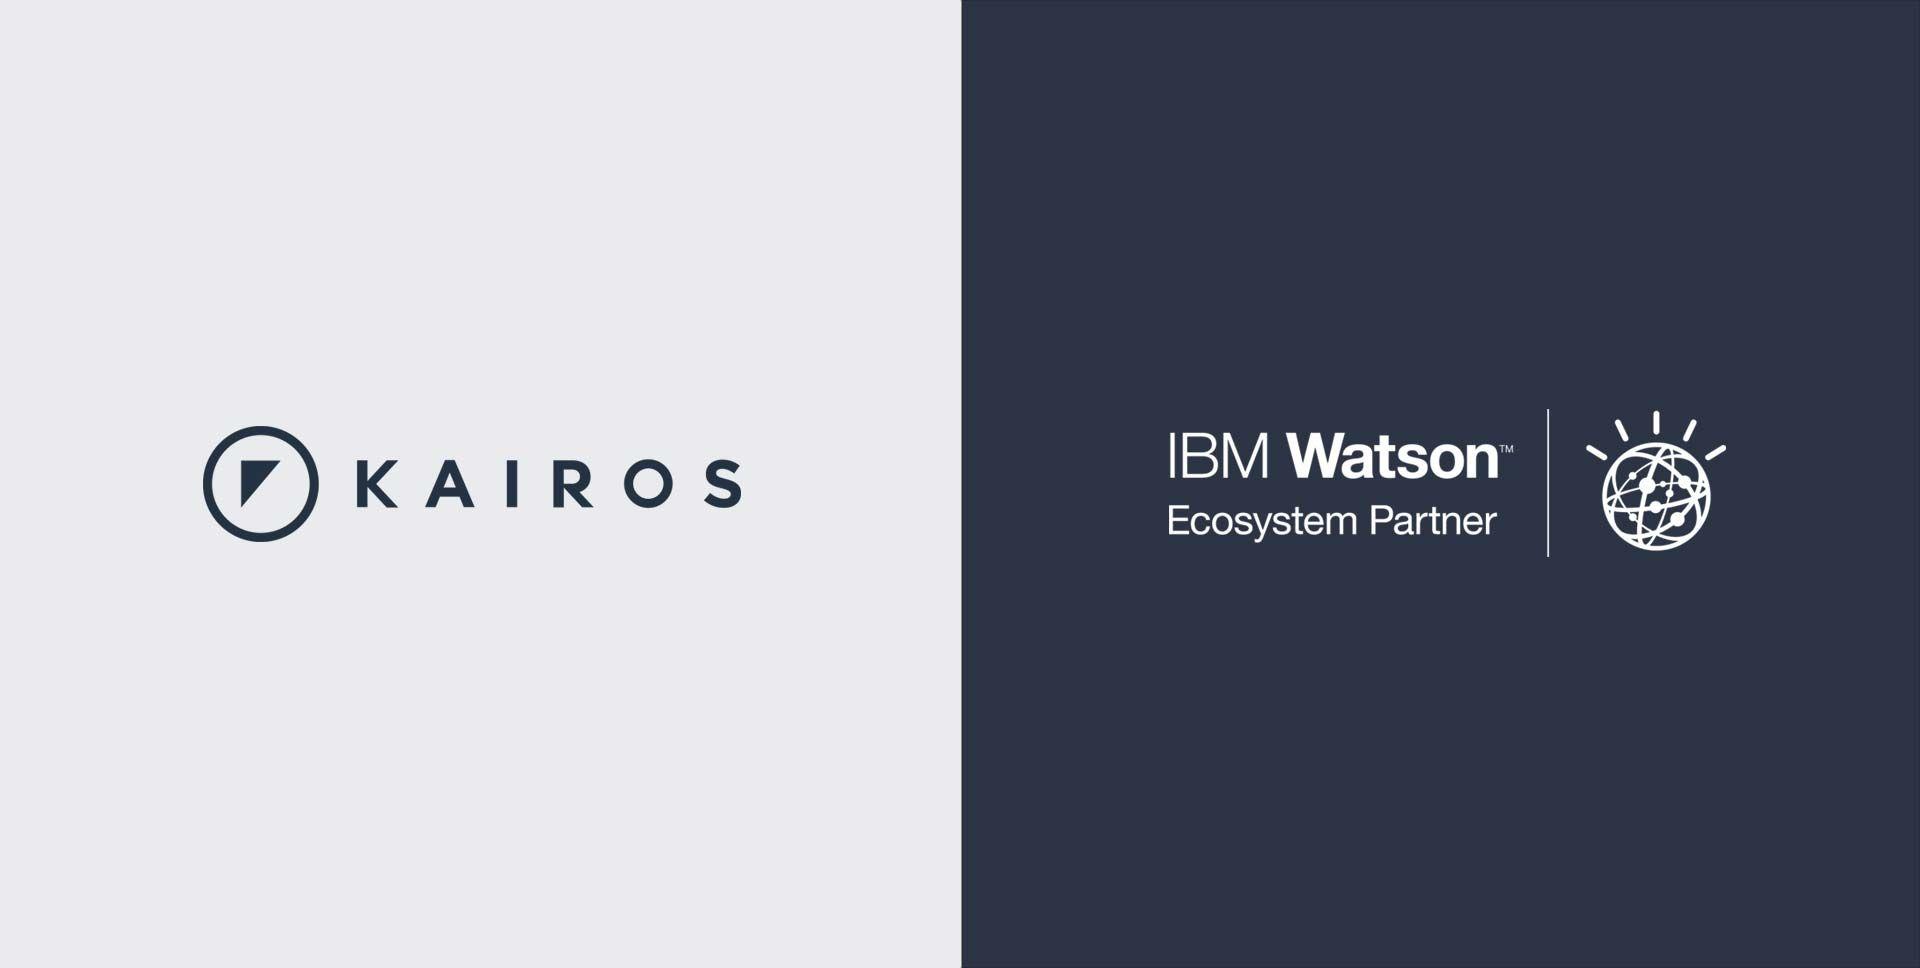 IBM Watson Logo - Kairos is an IBM Watson Ecosystem Partner